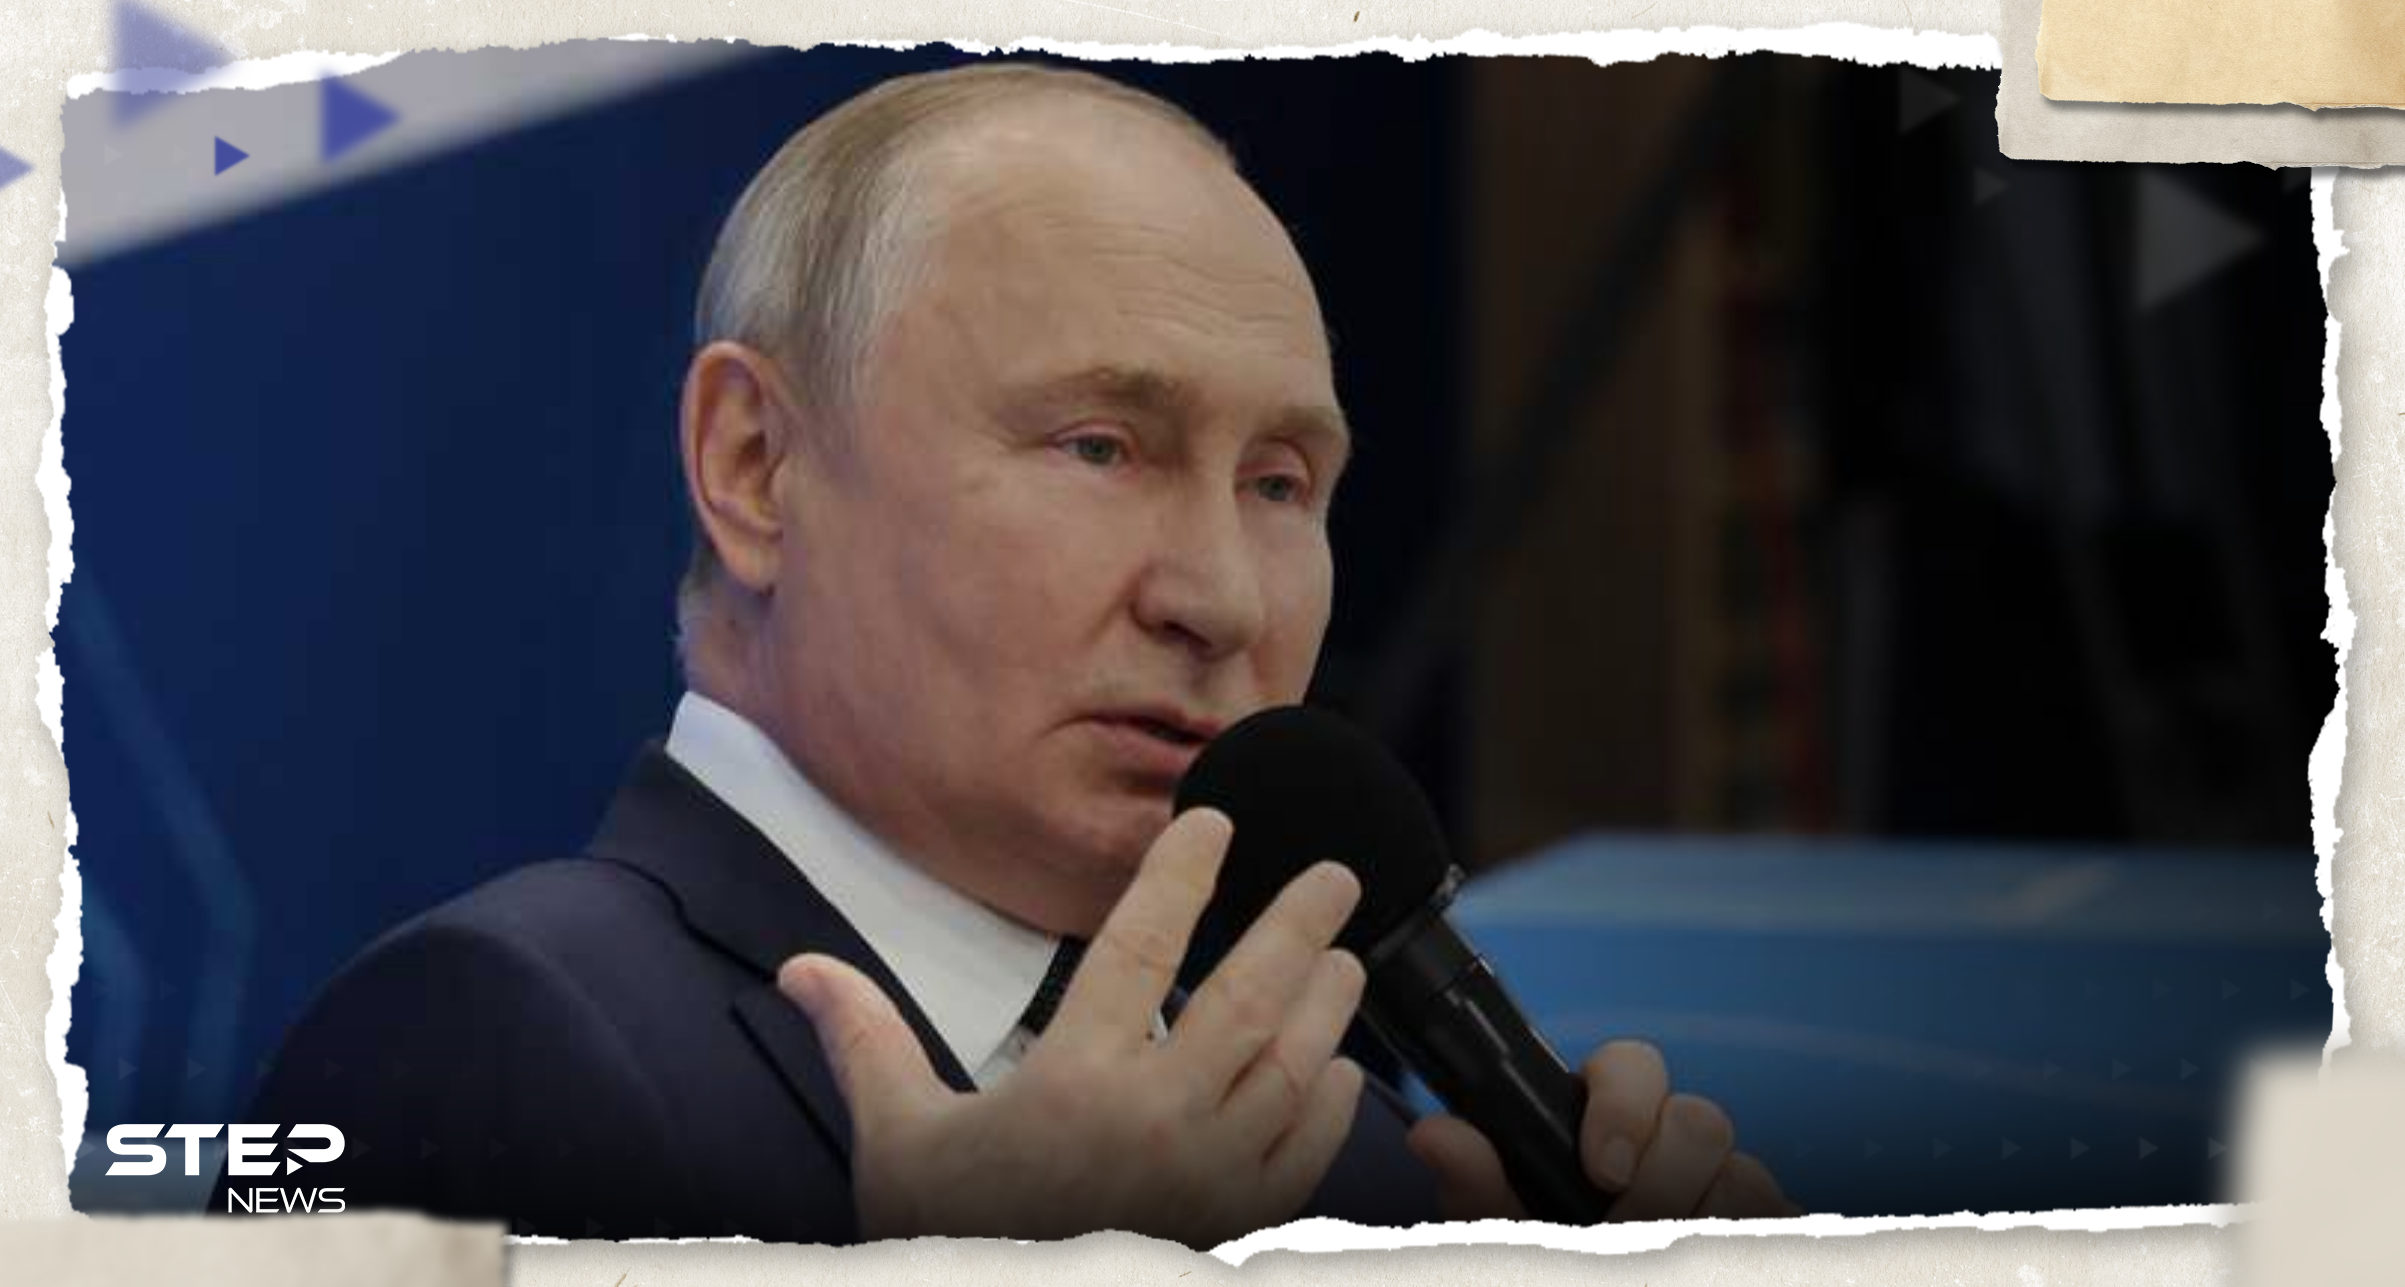 بوتين ينتقد محاكمة ترامب ويشيد بملياردير أمريكي ويوجه رسائل "نارية"